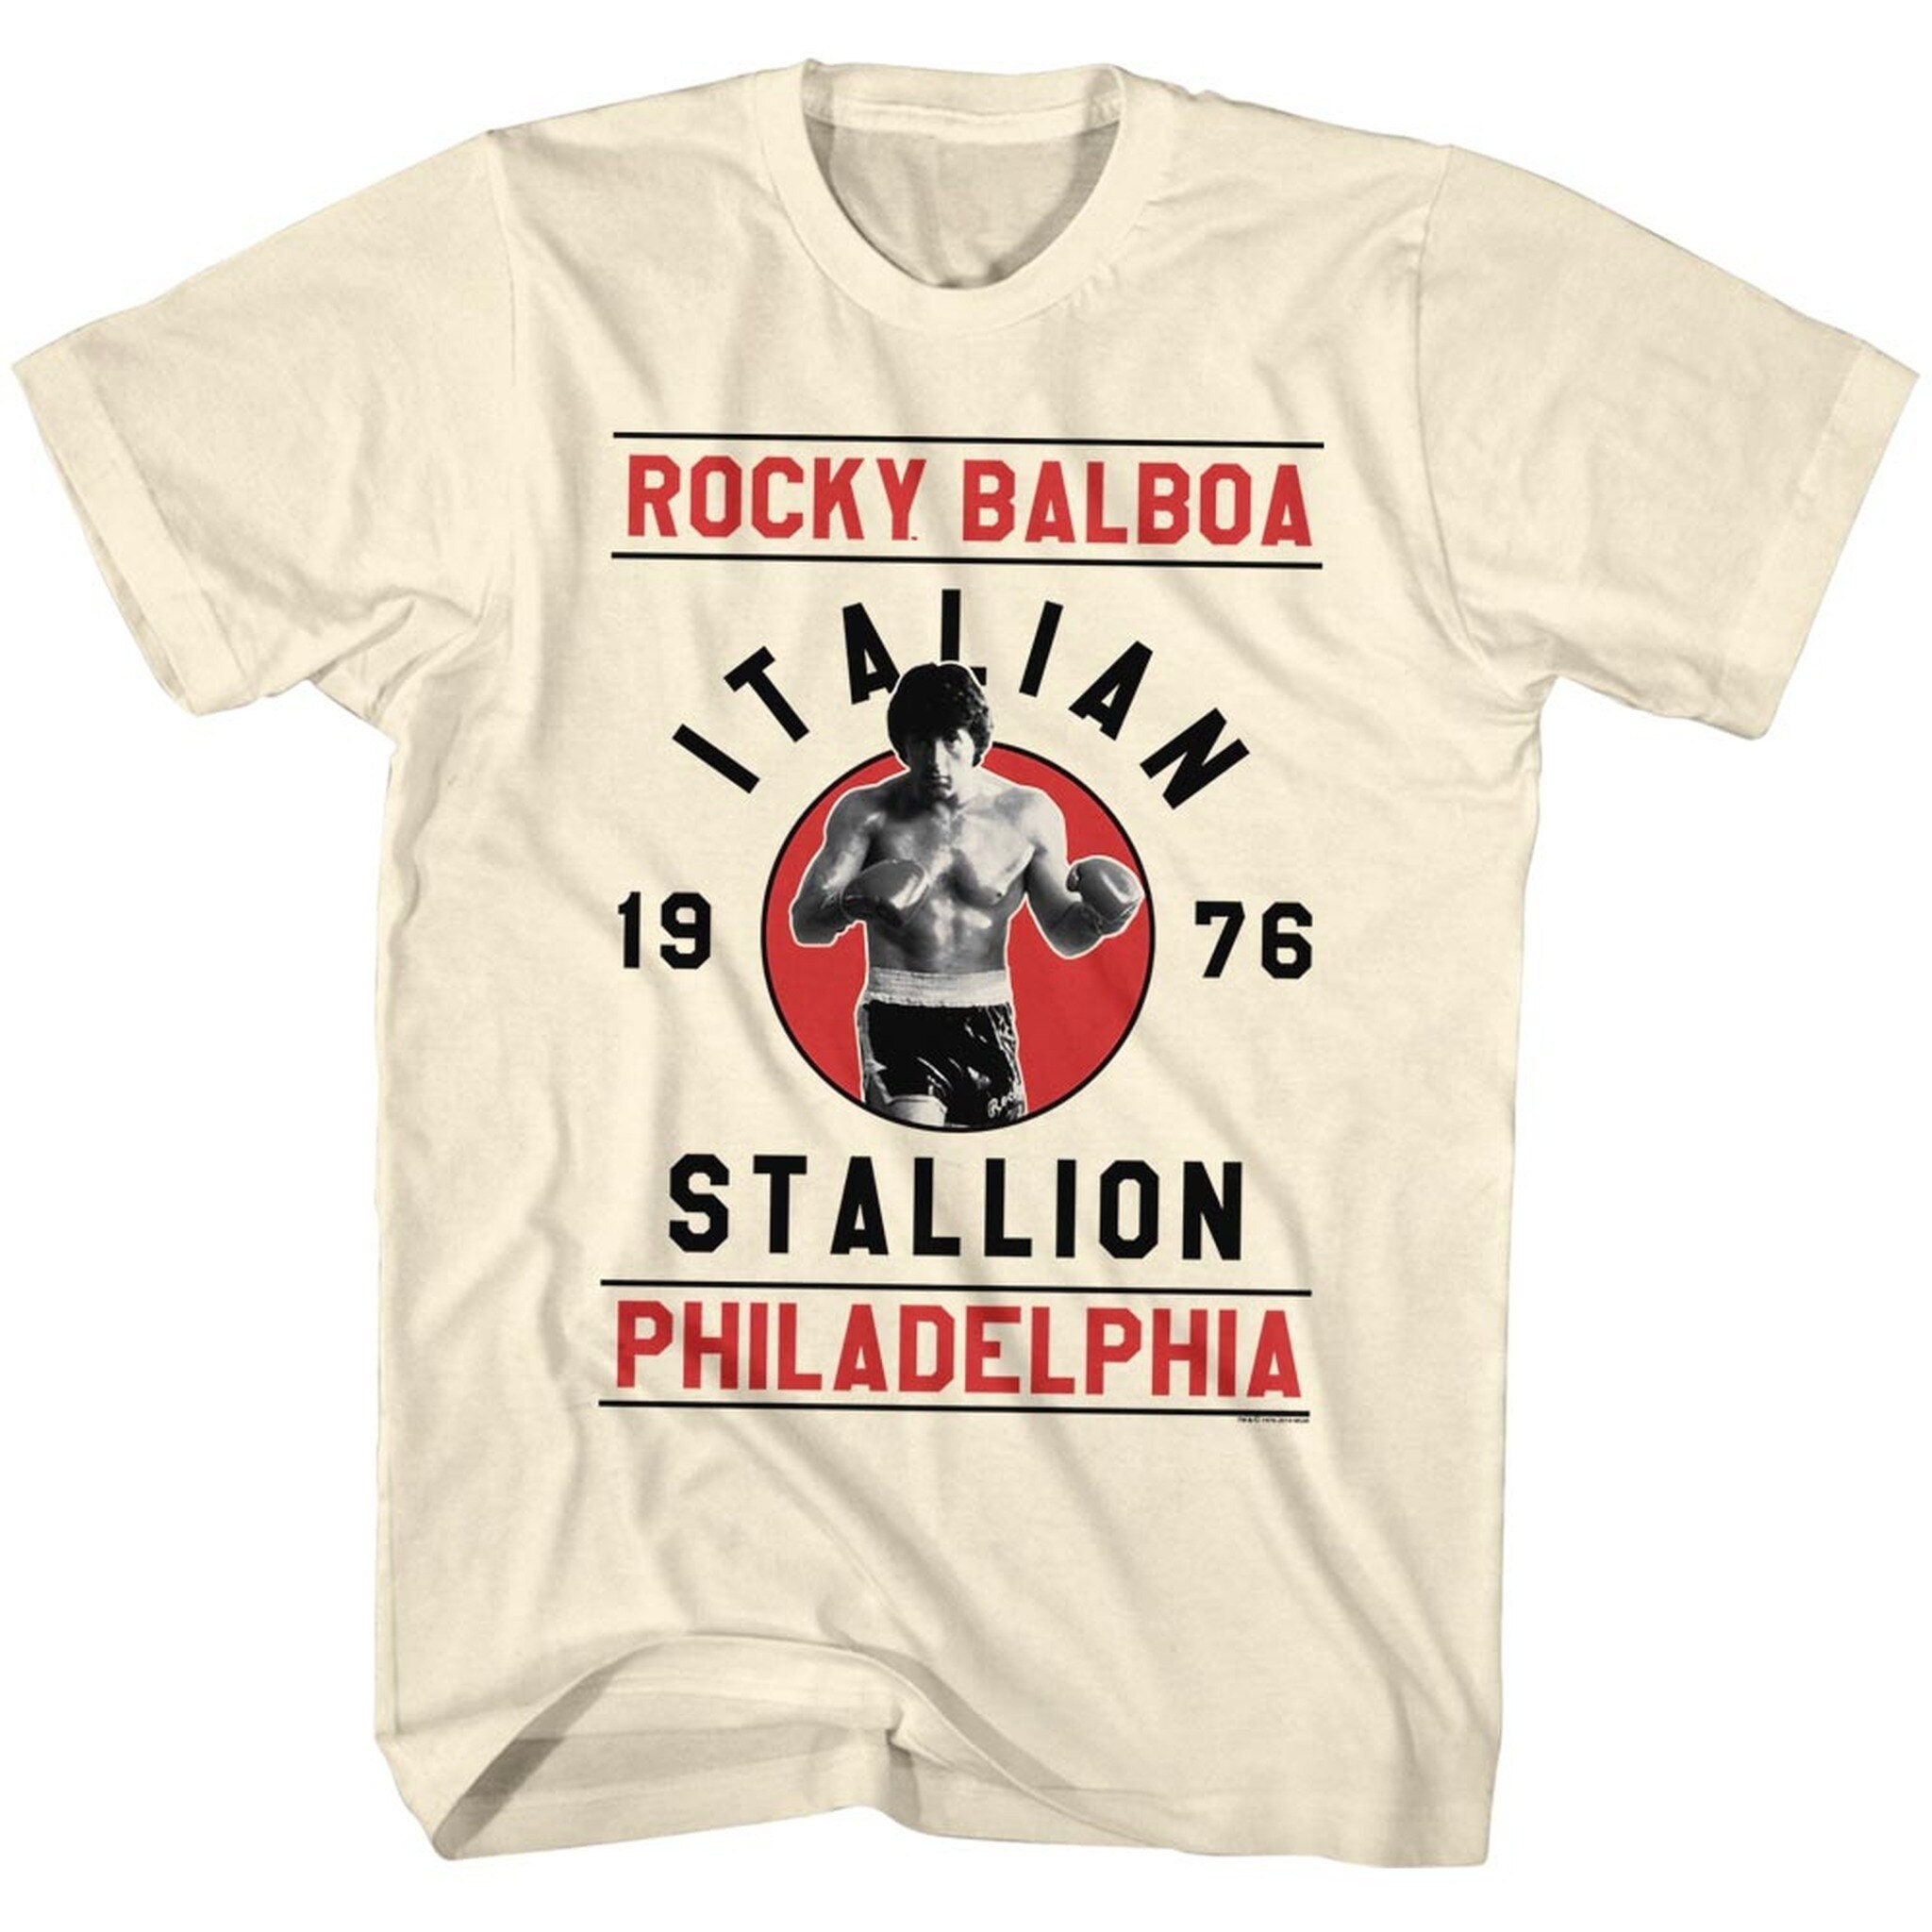 Balboa Roccioso Balboa Vincitore Posa Film Boxe Boxer Bianco Uomo T-Shirt Tee Grande 